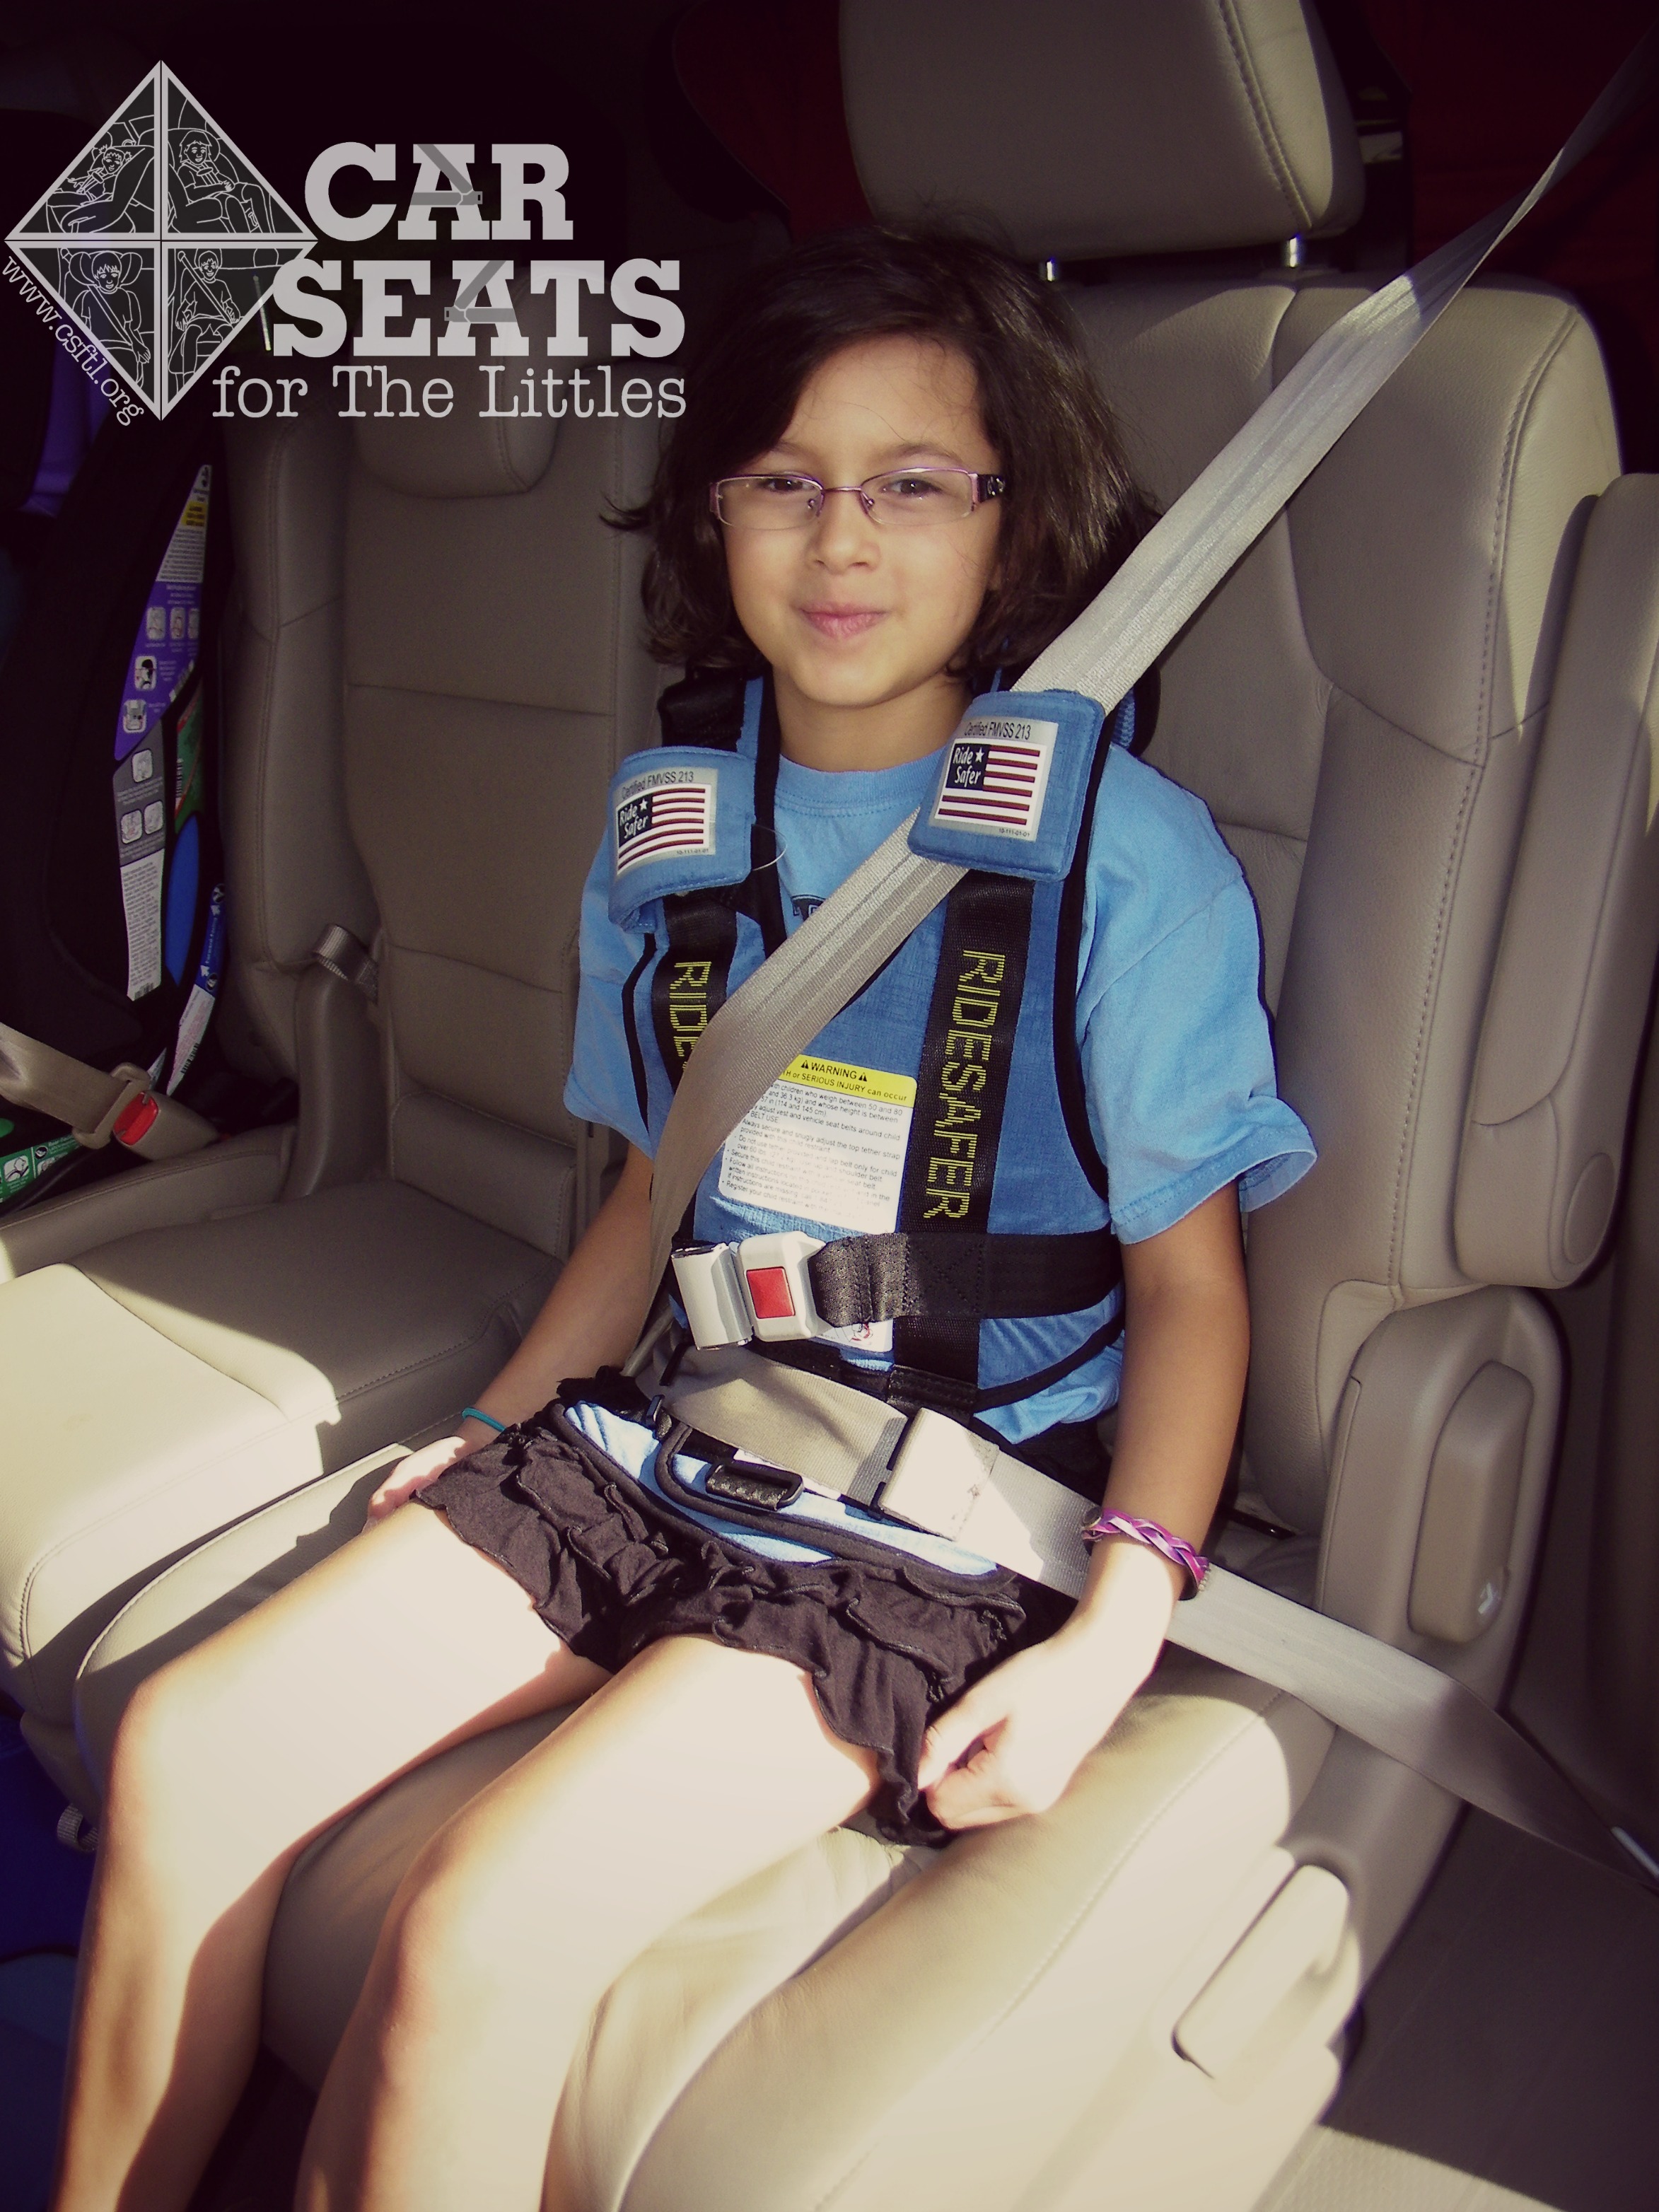 Travel Car Seat, Ride Safer Travel Vest